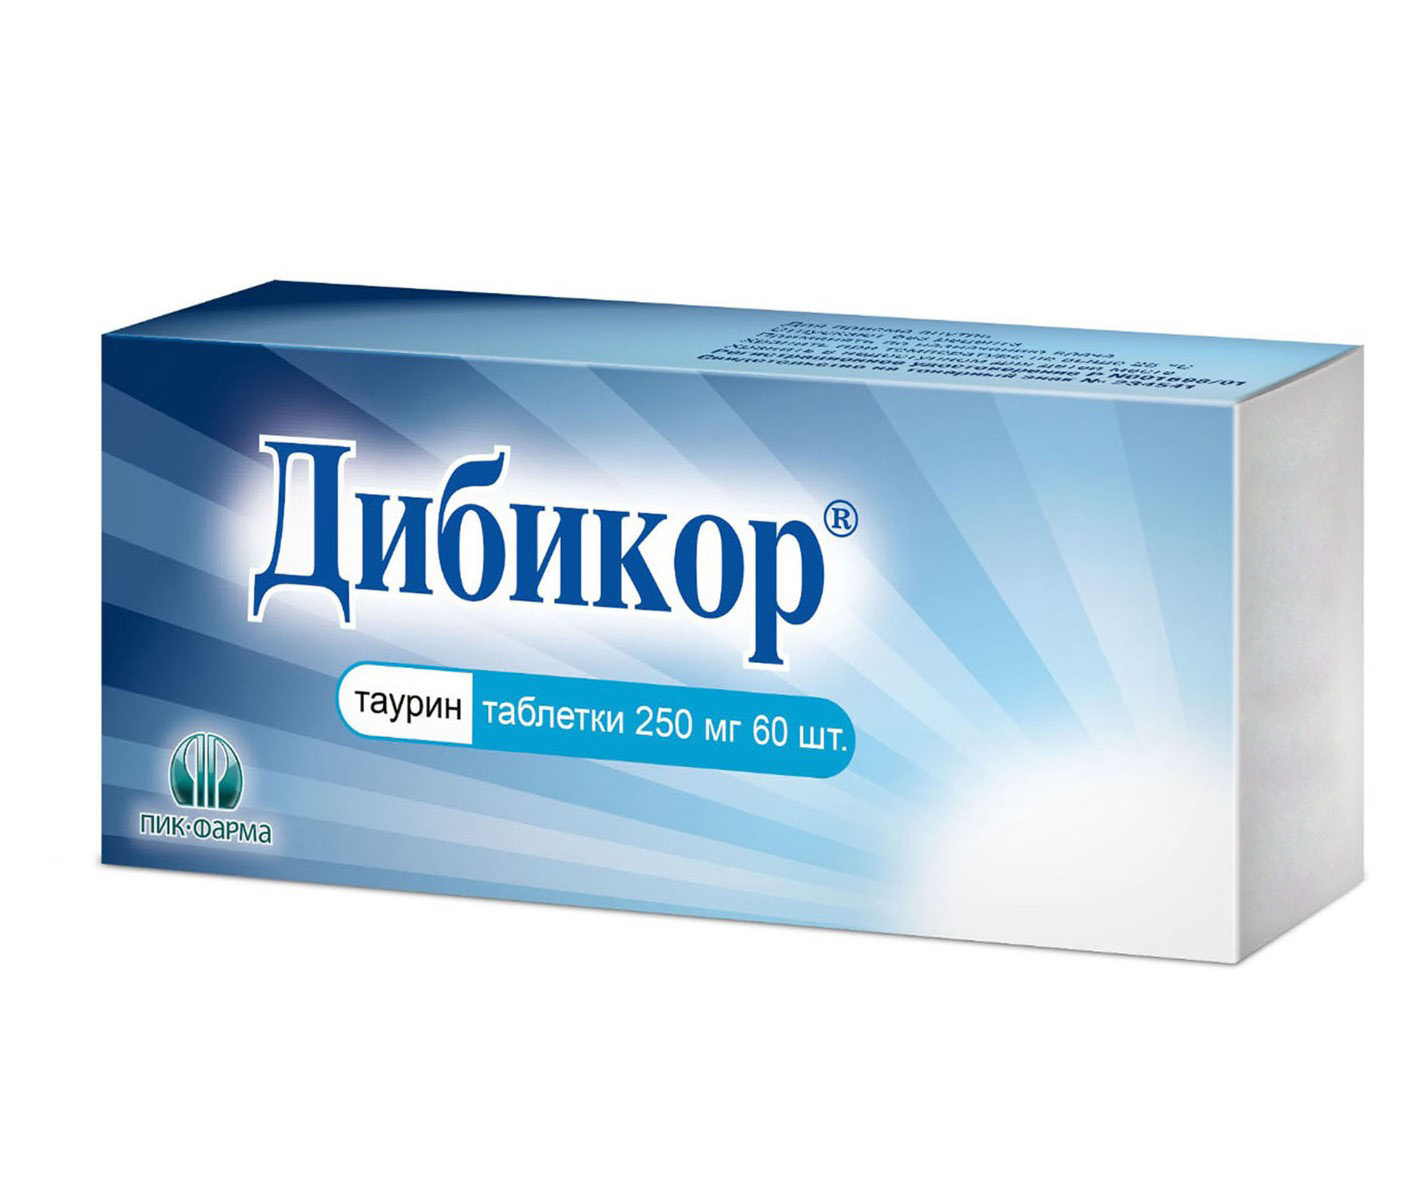 Дибикор, таблетки 250 мг, 60 шт. атлас мира обзорно географический